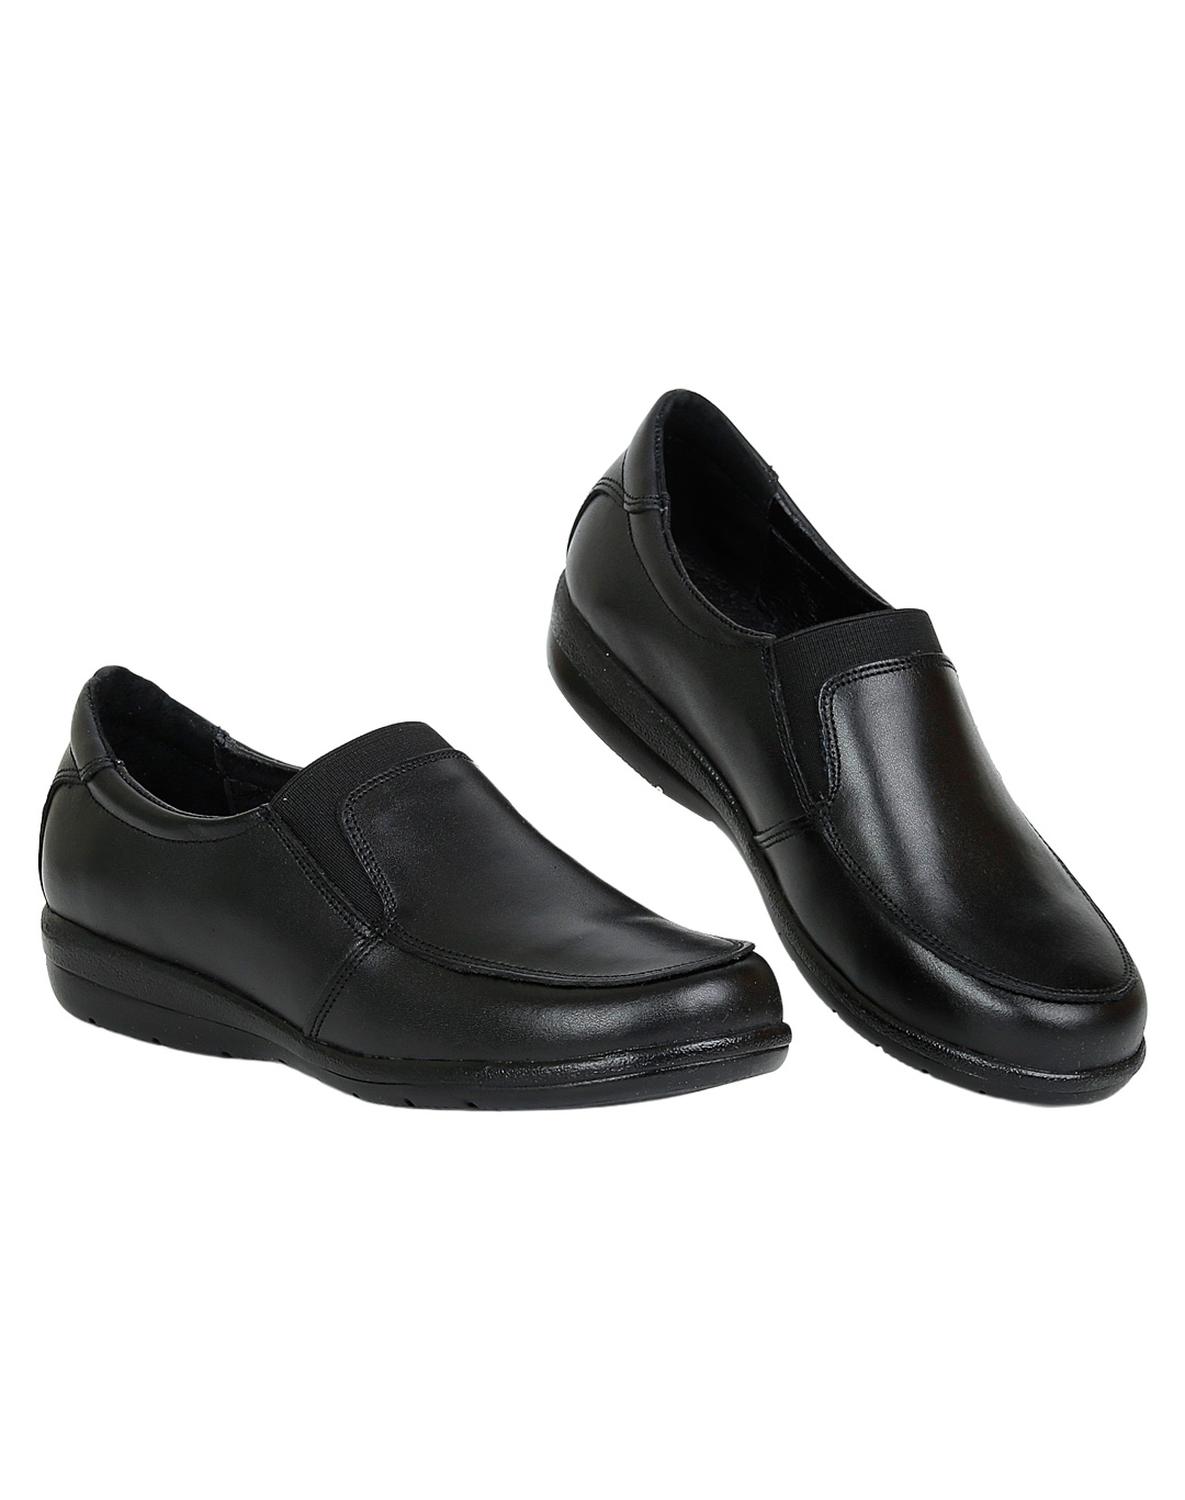 Zapato Casual Mujer Salvaje Tentación Negro 21002601 Piel